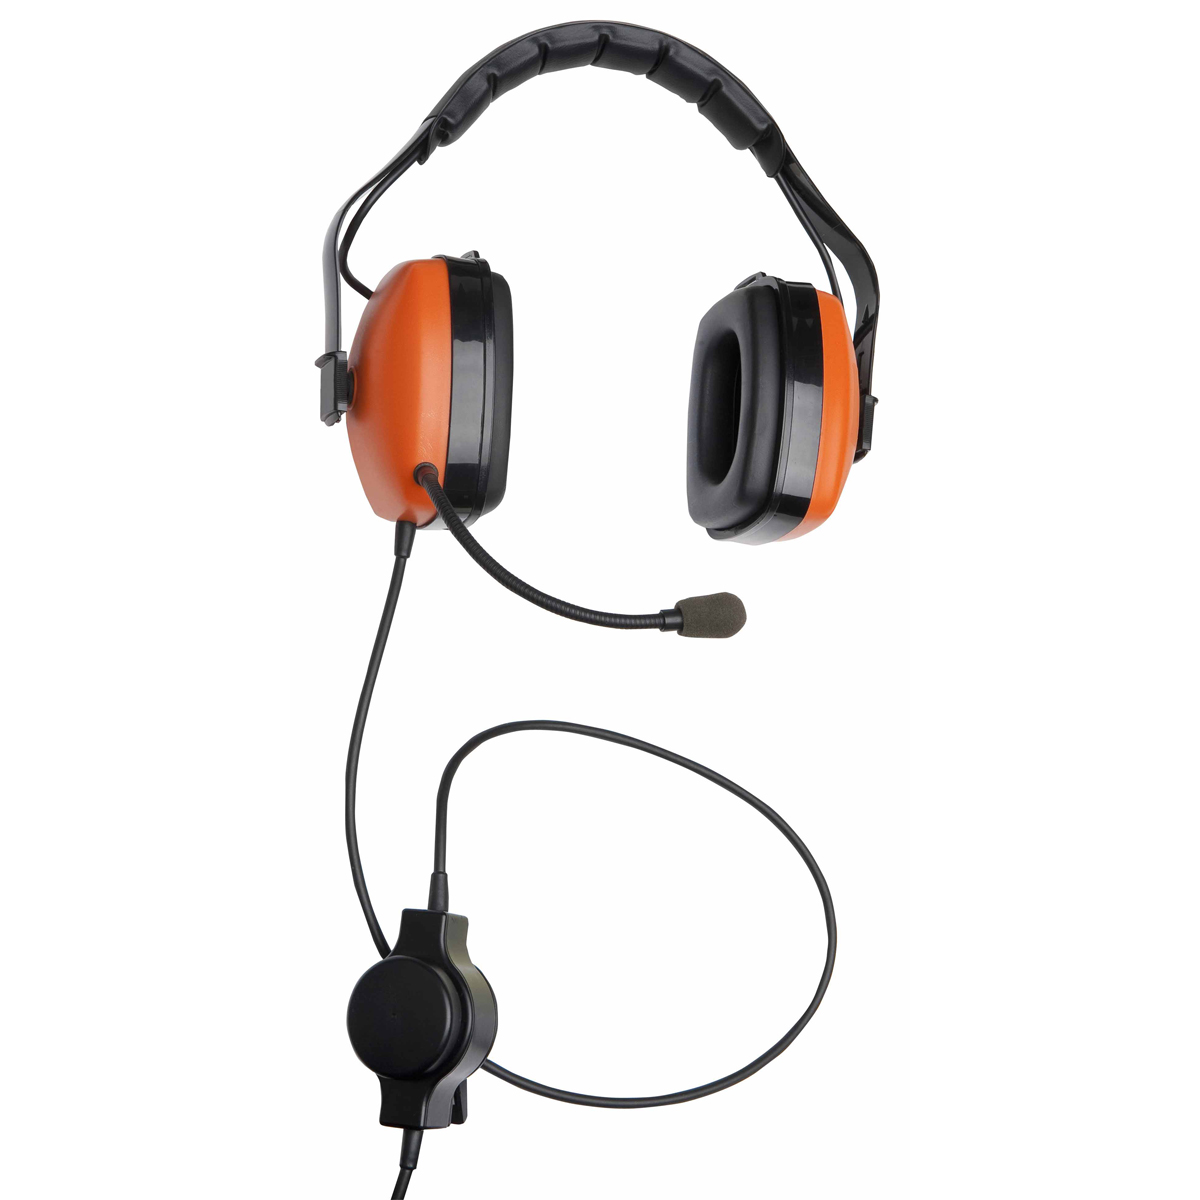 Headset für Außensprechstelle ermöglicht den Einsatz im lauten Umfeld